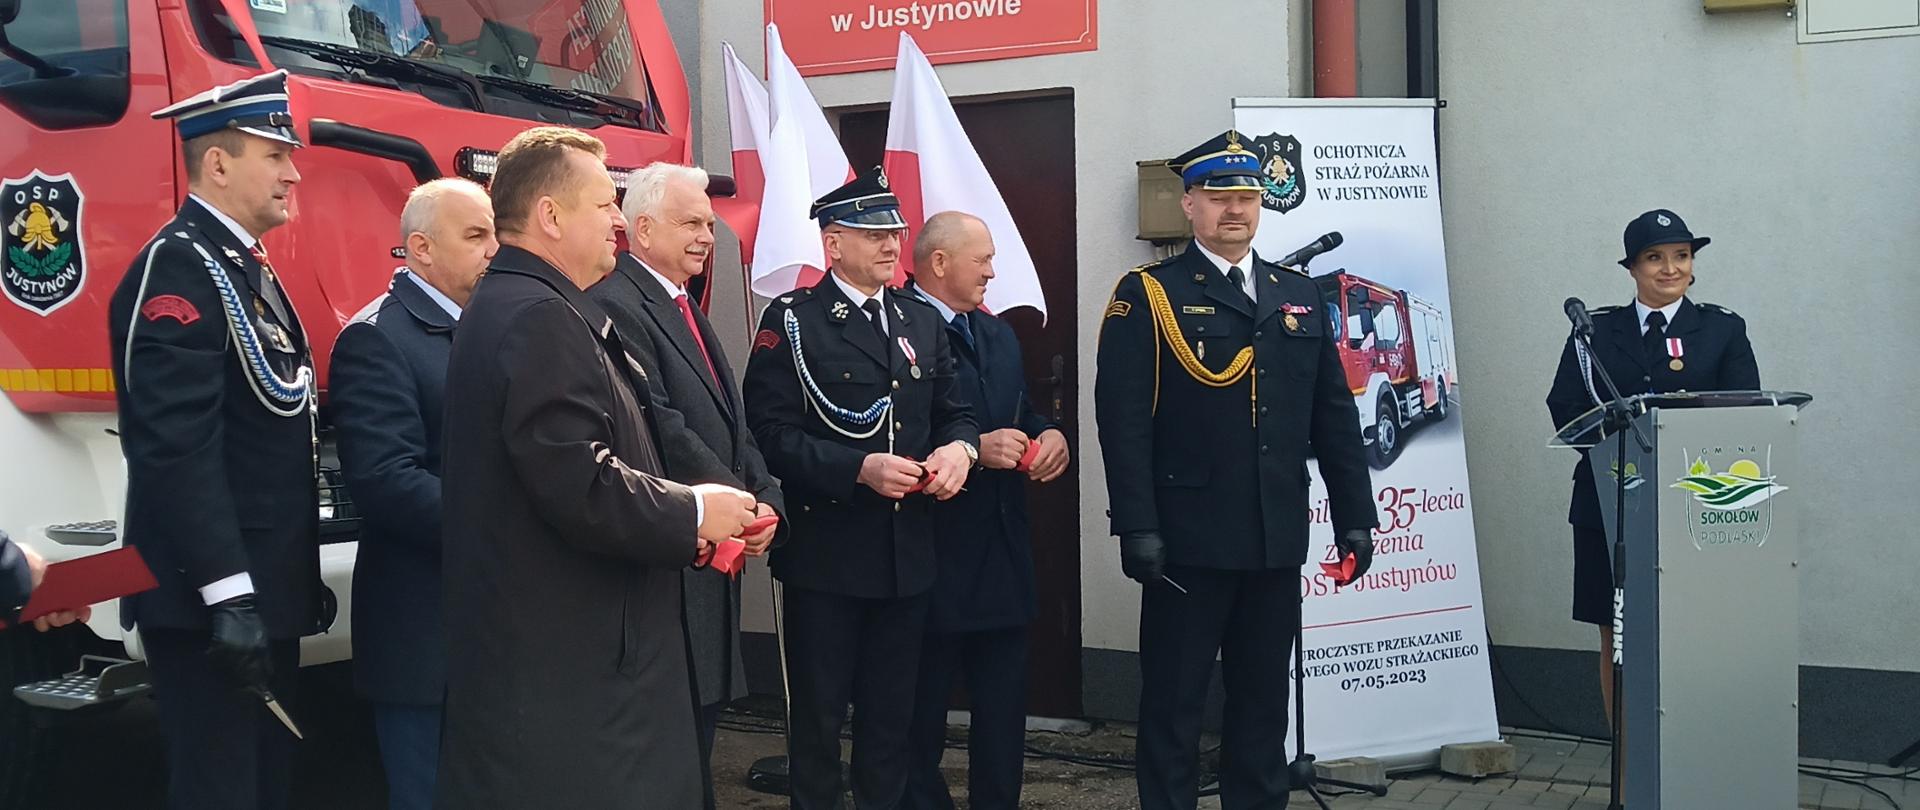 Uroczysty apel z okazji 35-lecia jednostki OSP w Justynowie, przekazania samochodu ratowniczo-gaśniczego oraz Gminnych Obchodów Dnia Strażaka (powiat sokołowski)